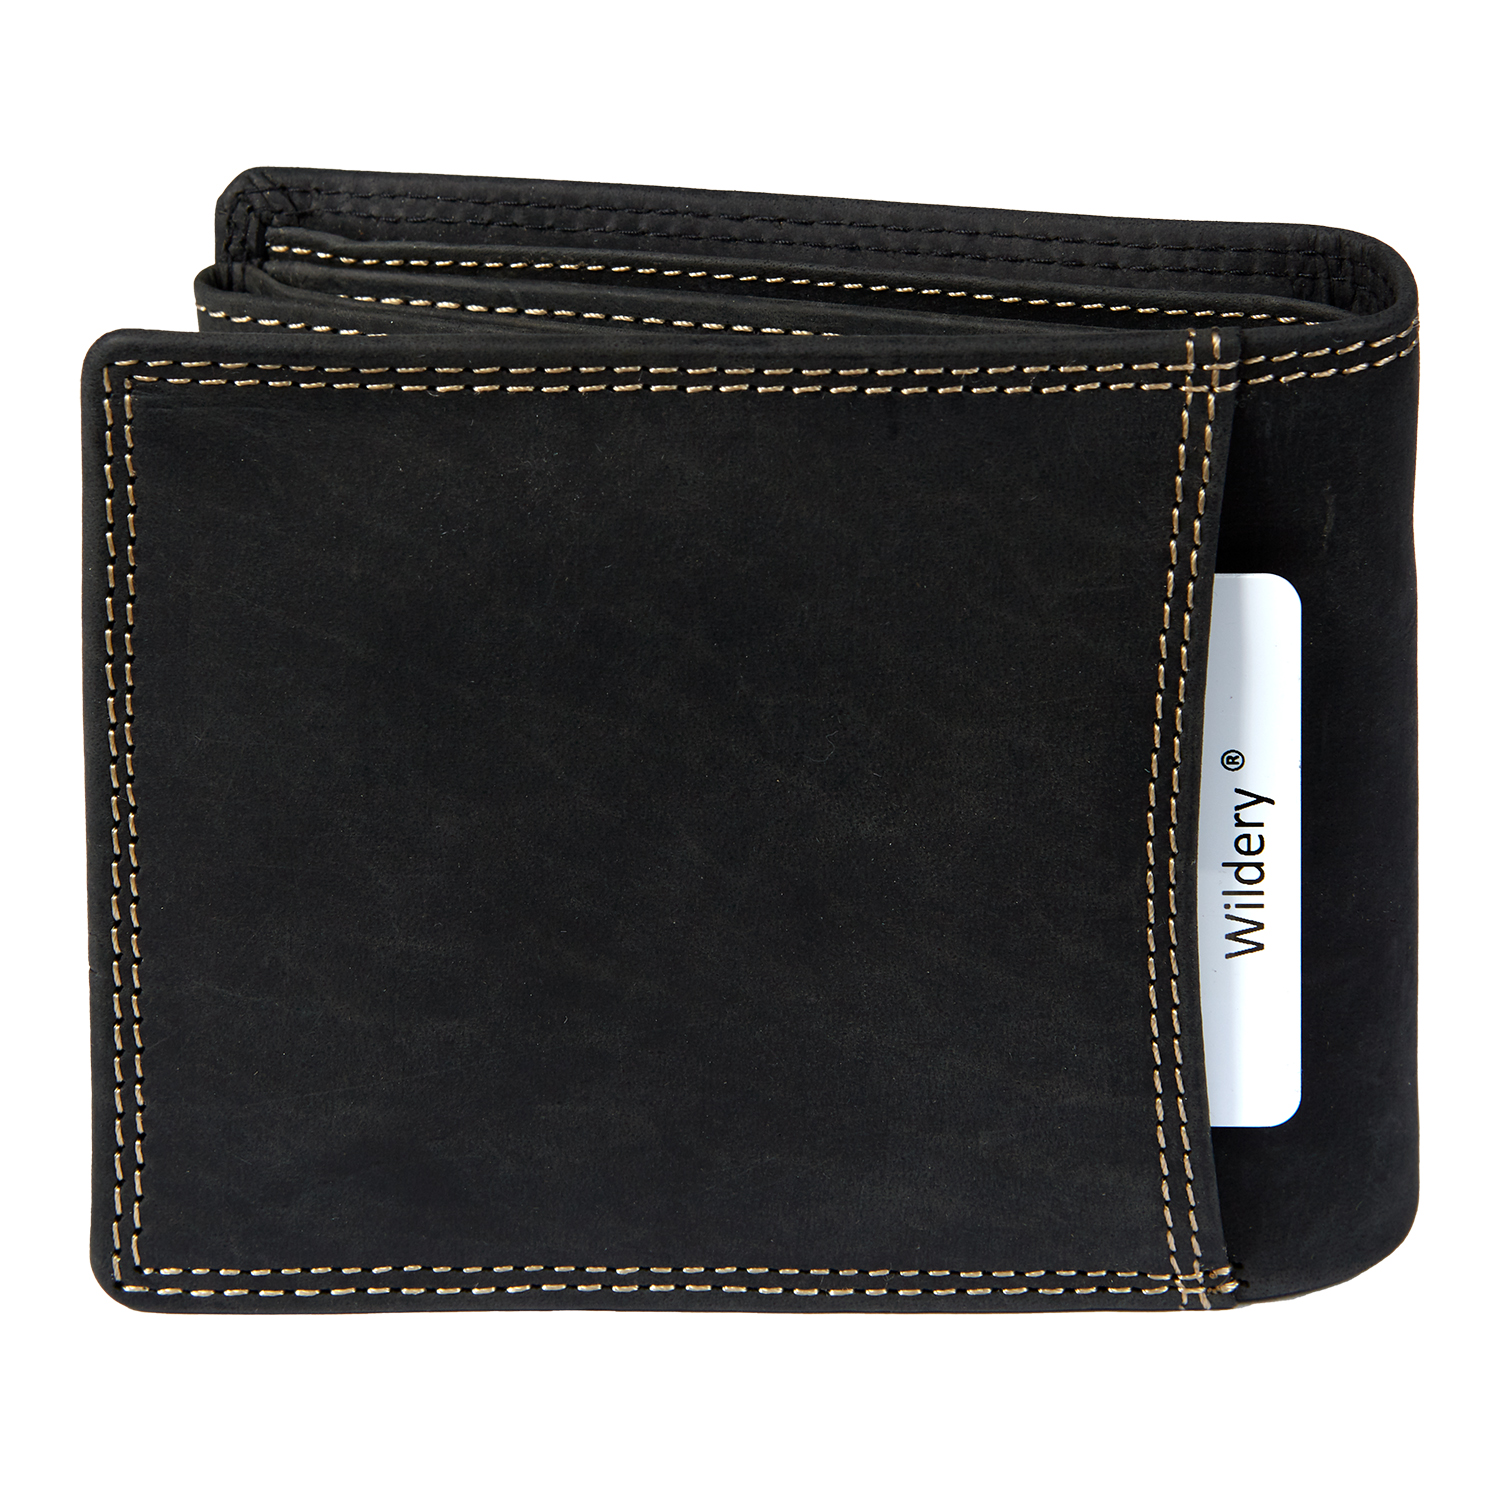 Herren Vintage Voll Leder Geldbörse mit RFID und NFC Schutz im Querformat